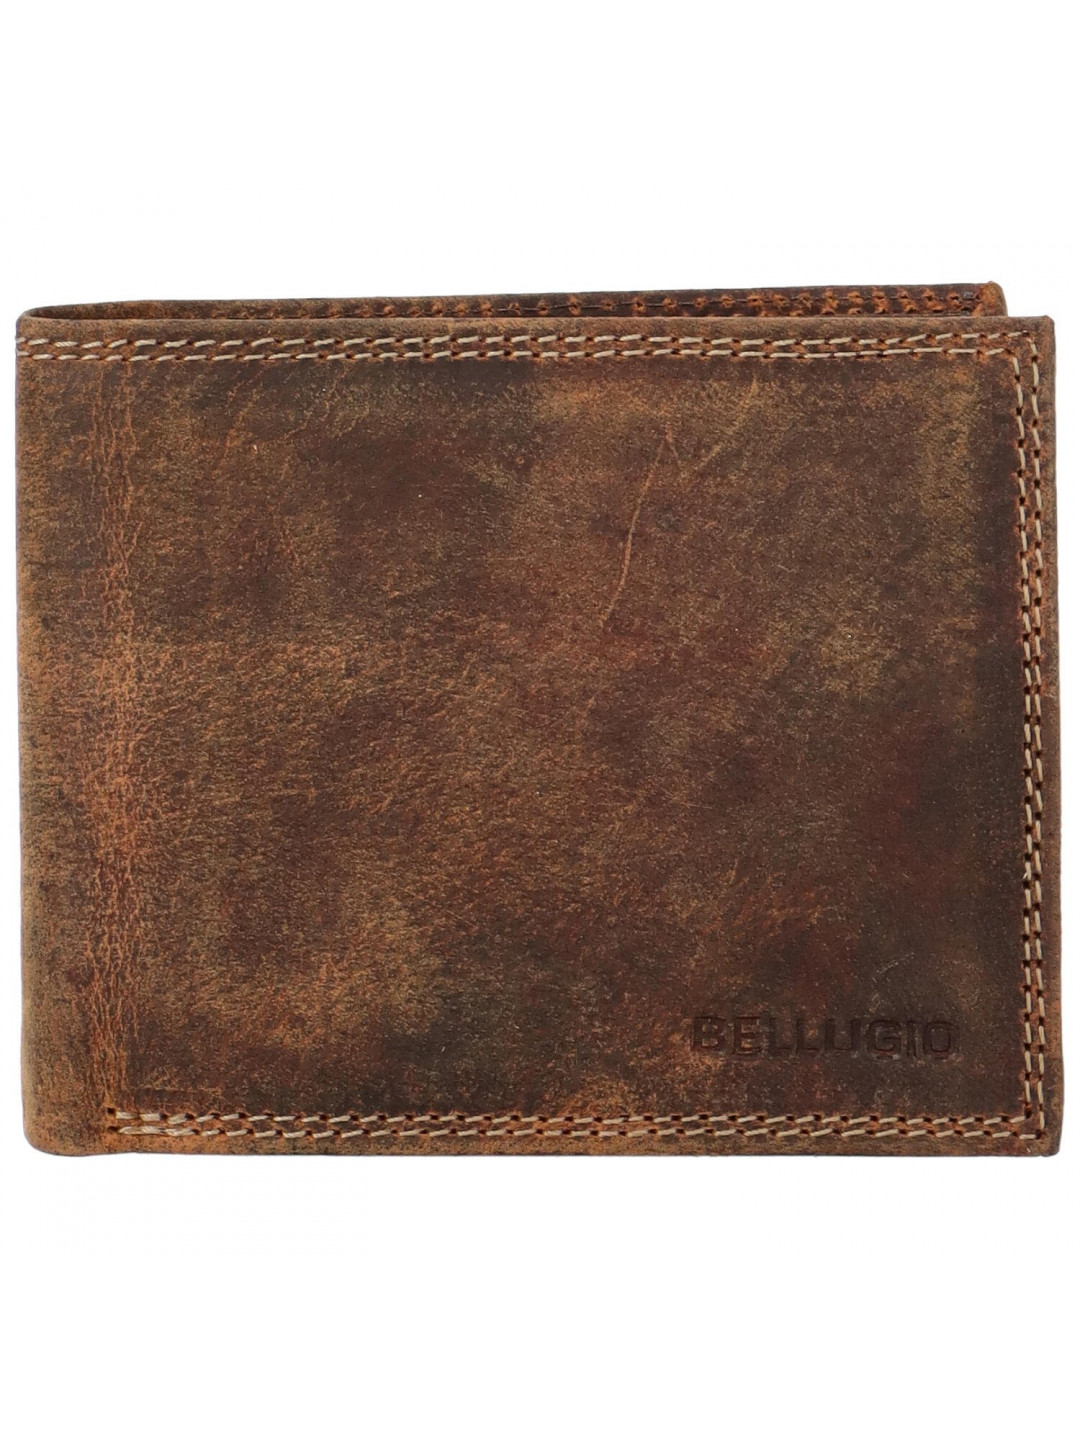 Pánská kožená peněženka světle hnědá – Bellugio Massay